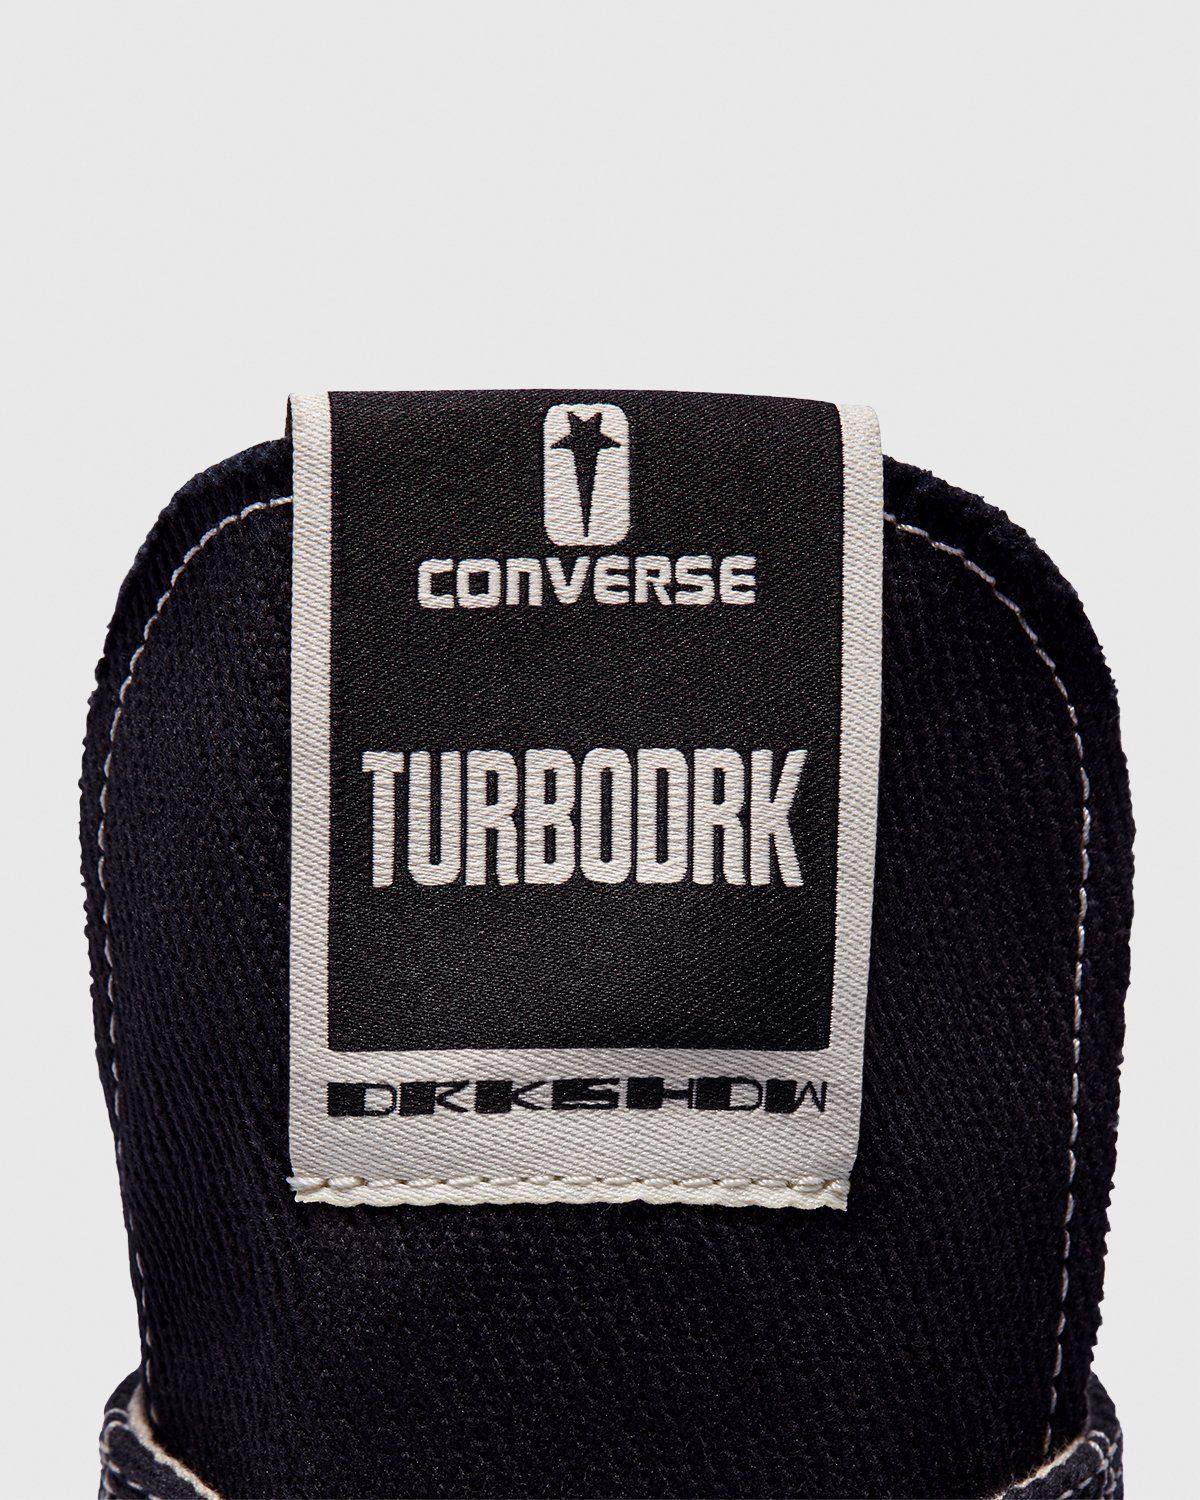 Converse – DRKSHDW TURBODRK Chuck 70 Black - High Top Sneakers - Black - Image 7